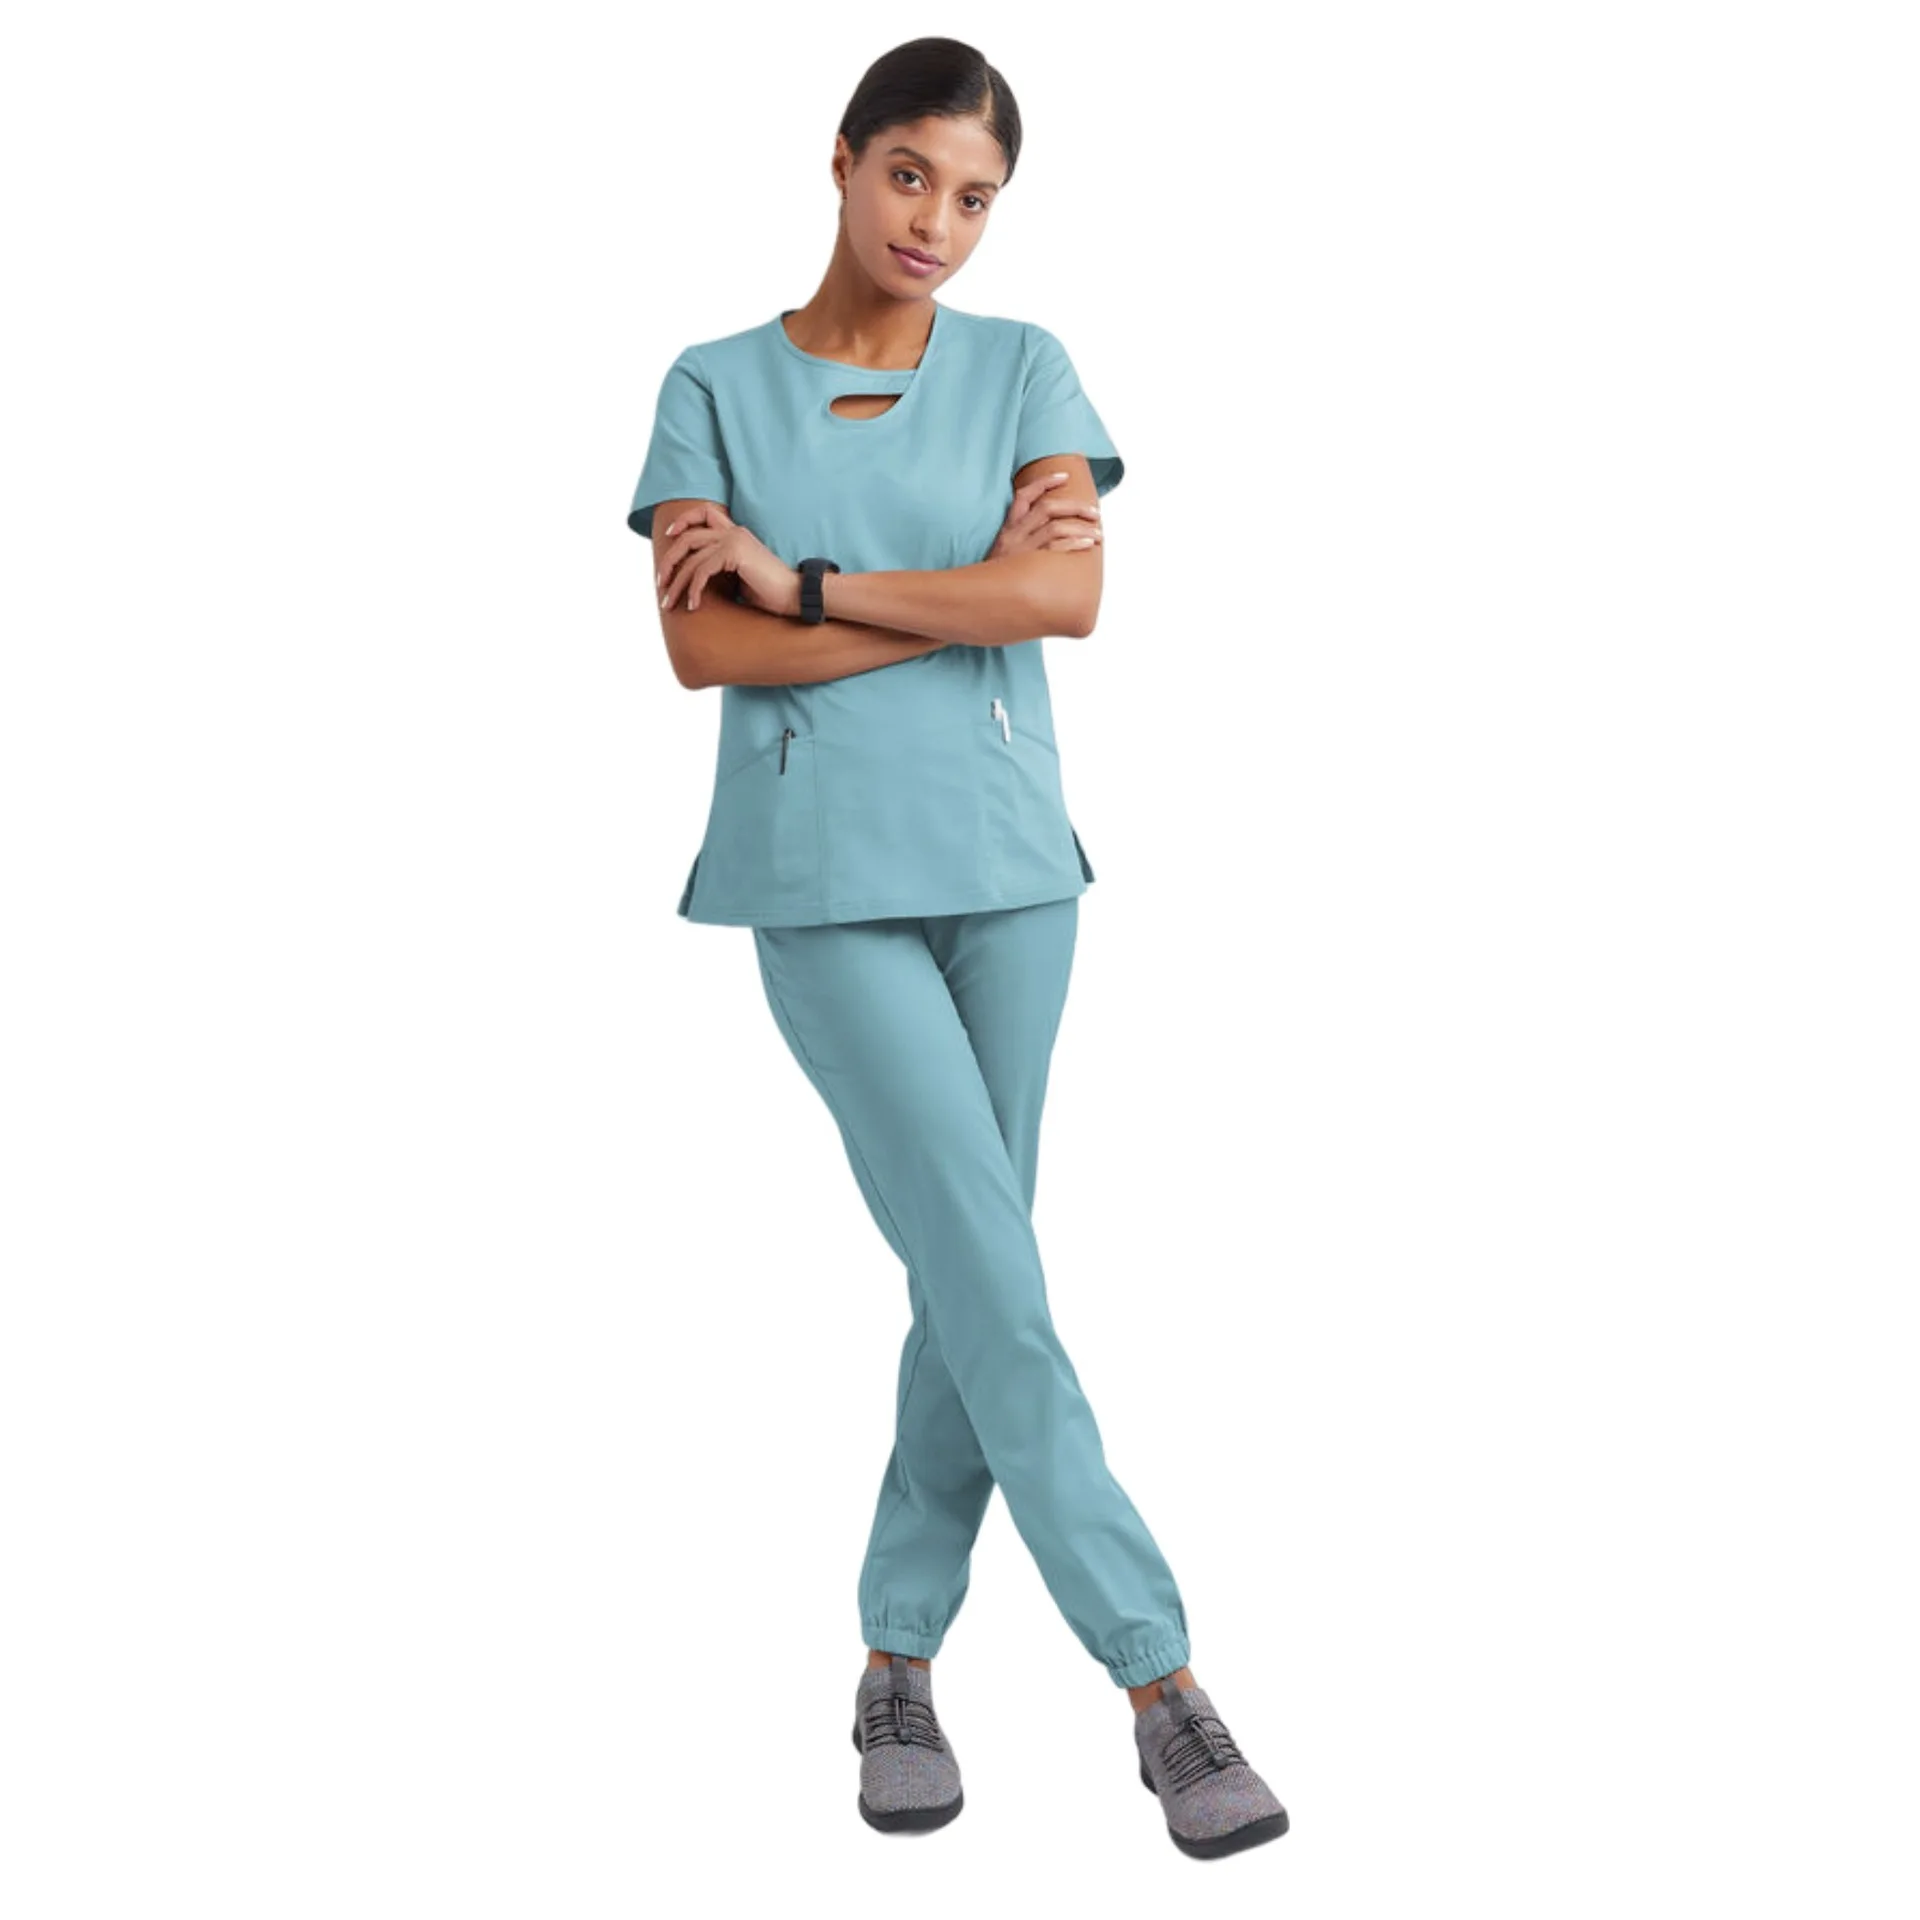 Hospital Enfermagem Scrubs Set para Mulheres, Spandex e Stretch Uniformes Médicos, Uniforme de Enfermeira, Conjuntos Fit, Novo Design